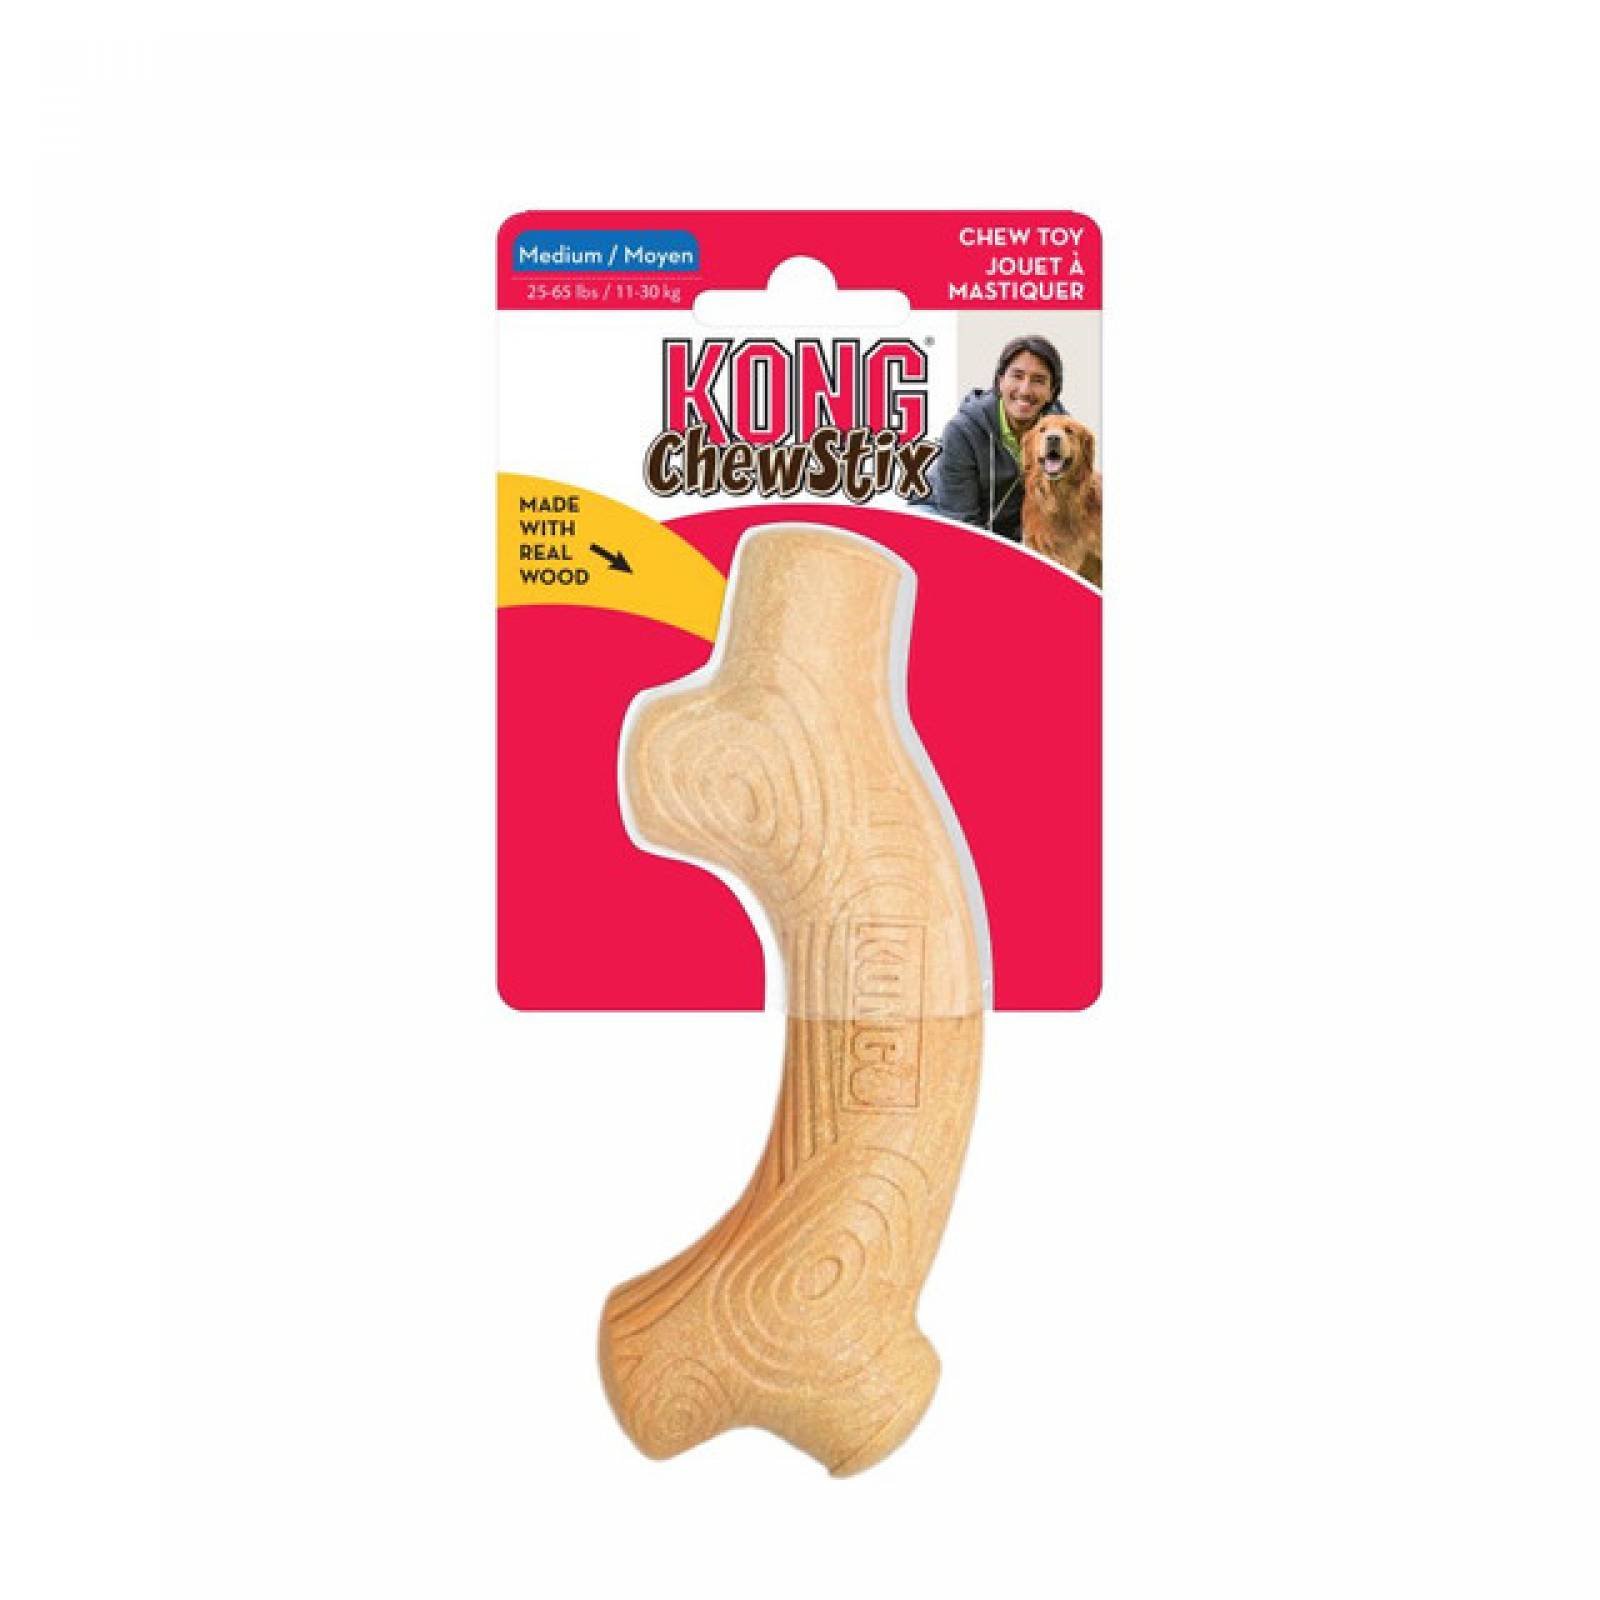 Kong Chewstix juguete para perro Hueso palo para masticar madera real y aroma a tocino Gde